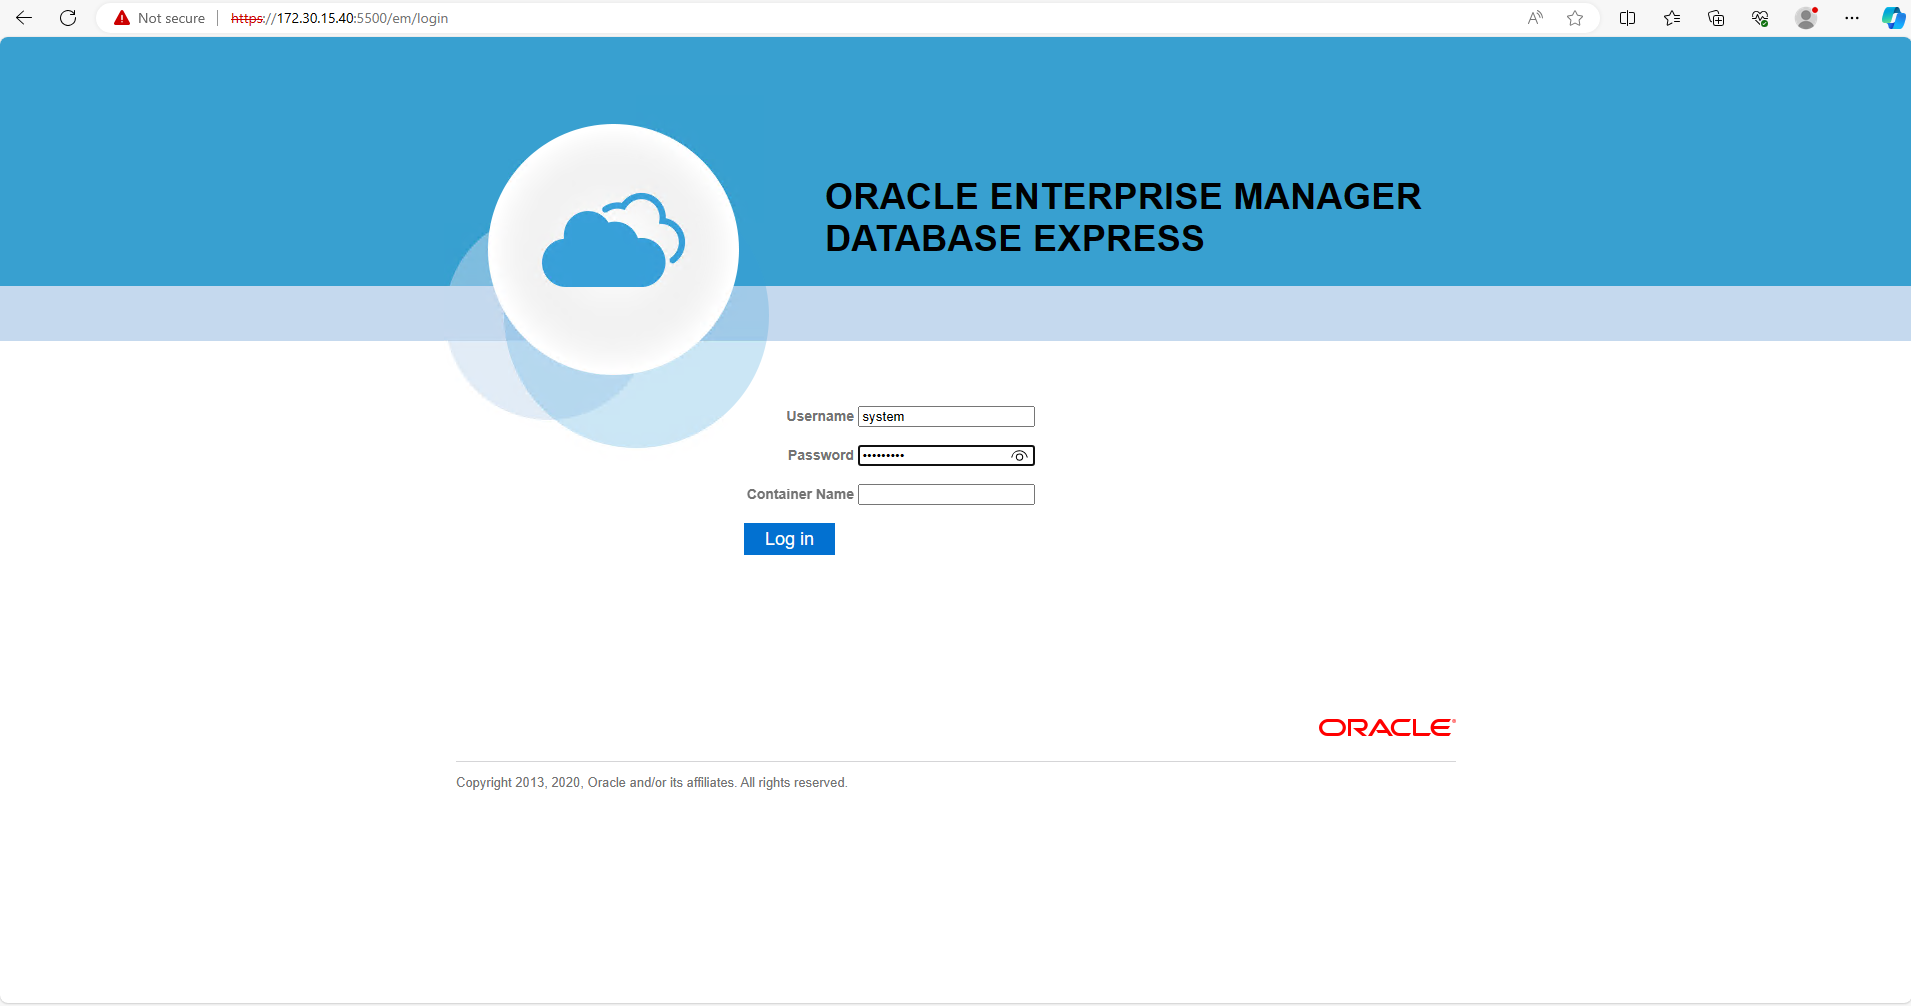 このイメージは、Oracle Enterprise Manager Expressのログイン画面を示しています。